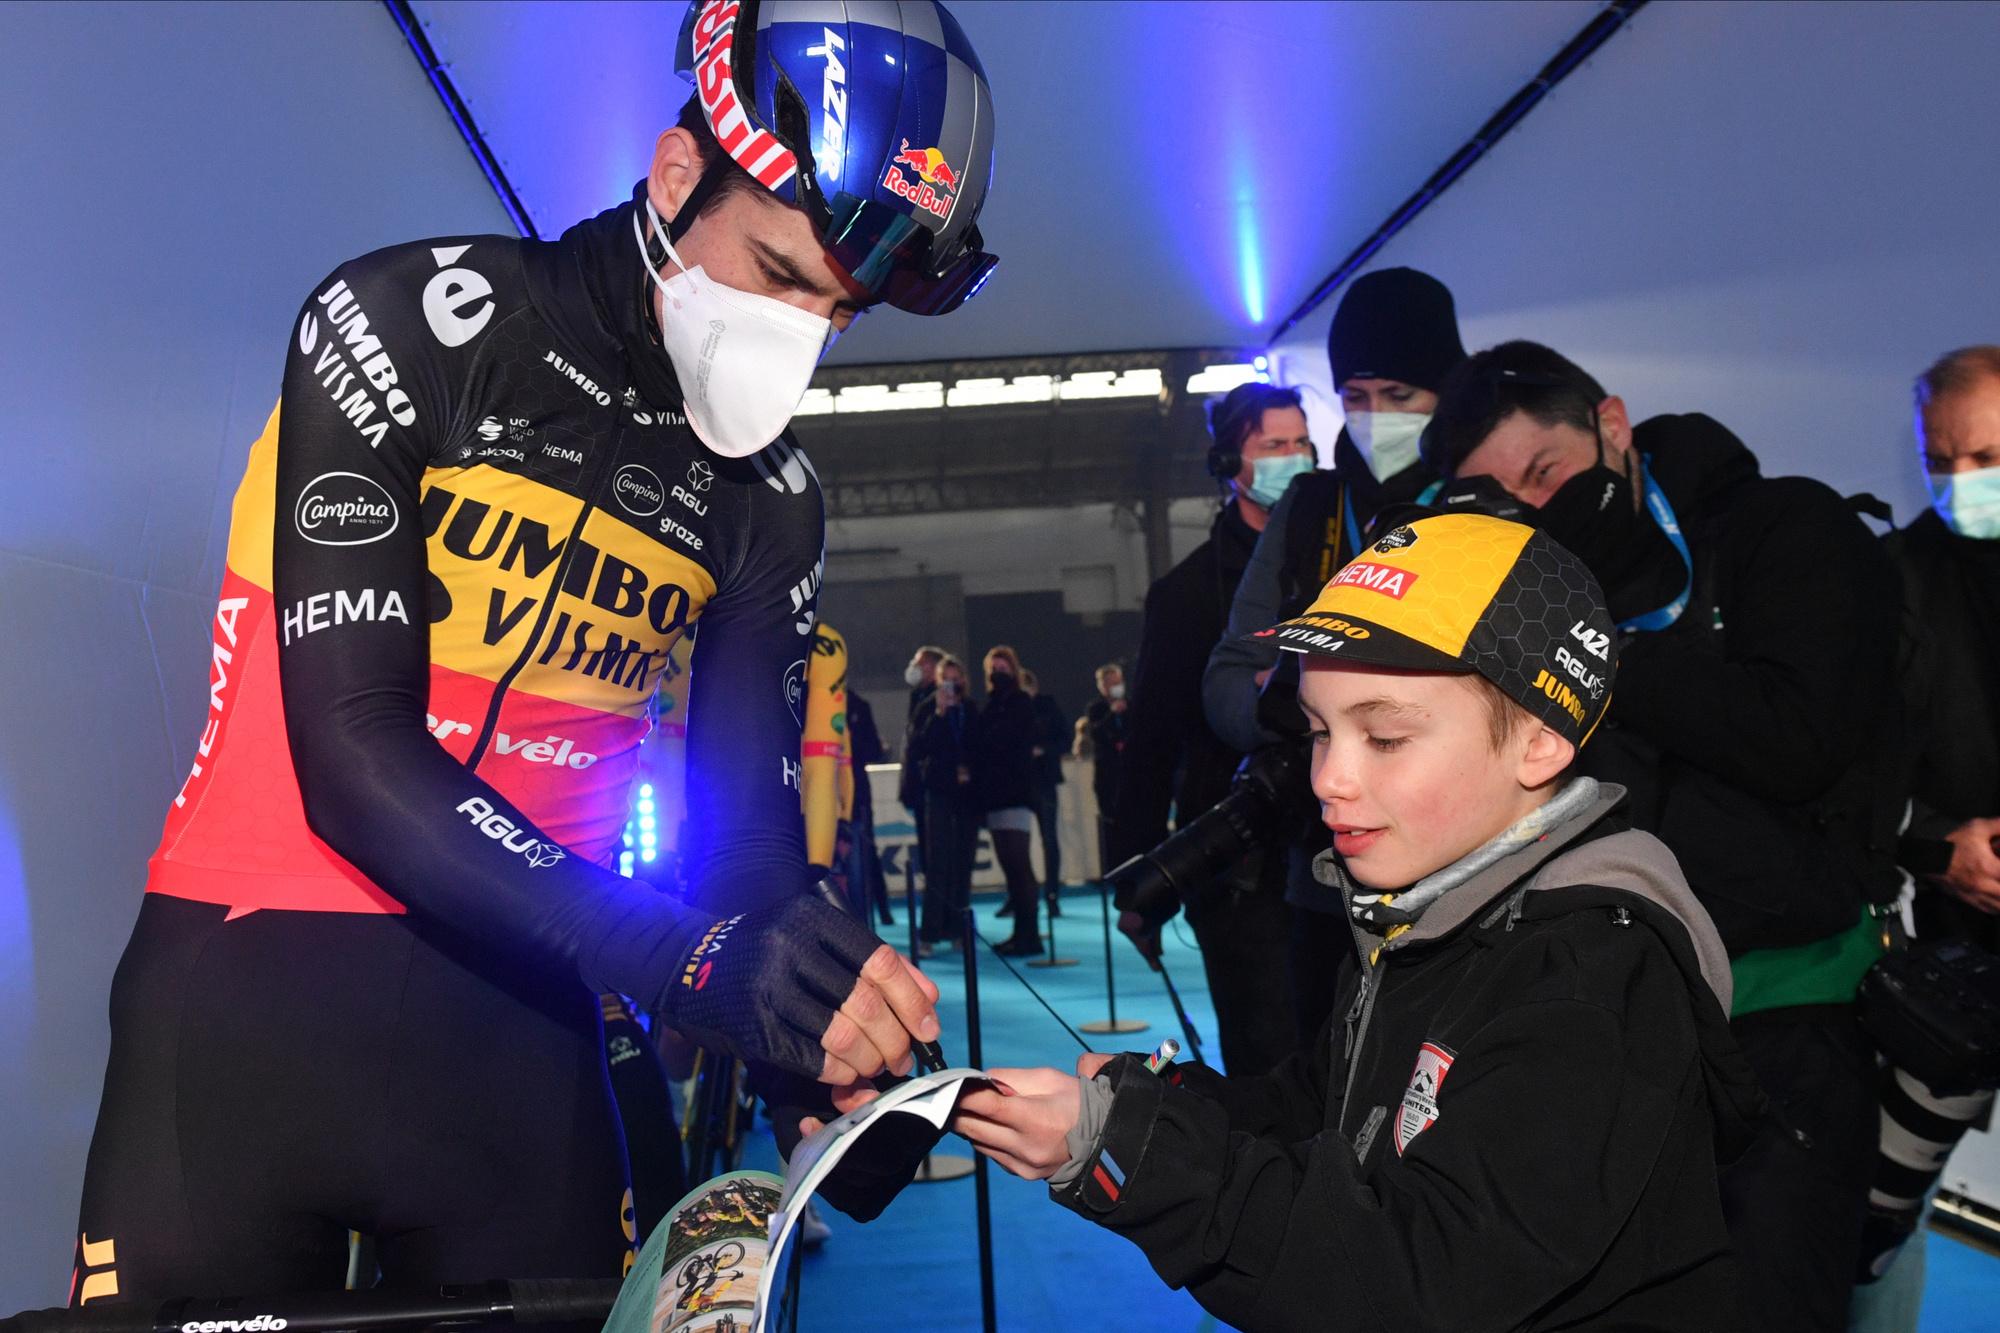 Van Aert signant un autographe à un jeune fan avant le départ du circuit Het Nieuwsblad.